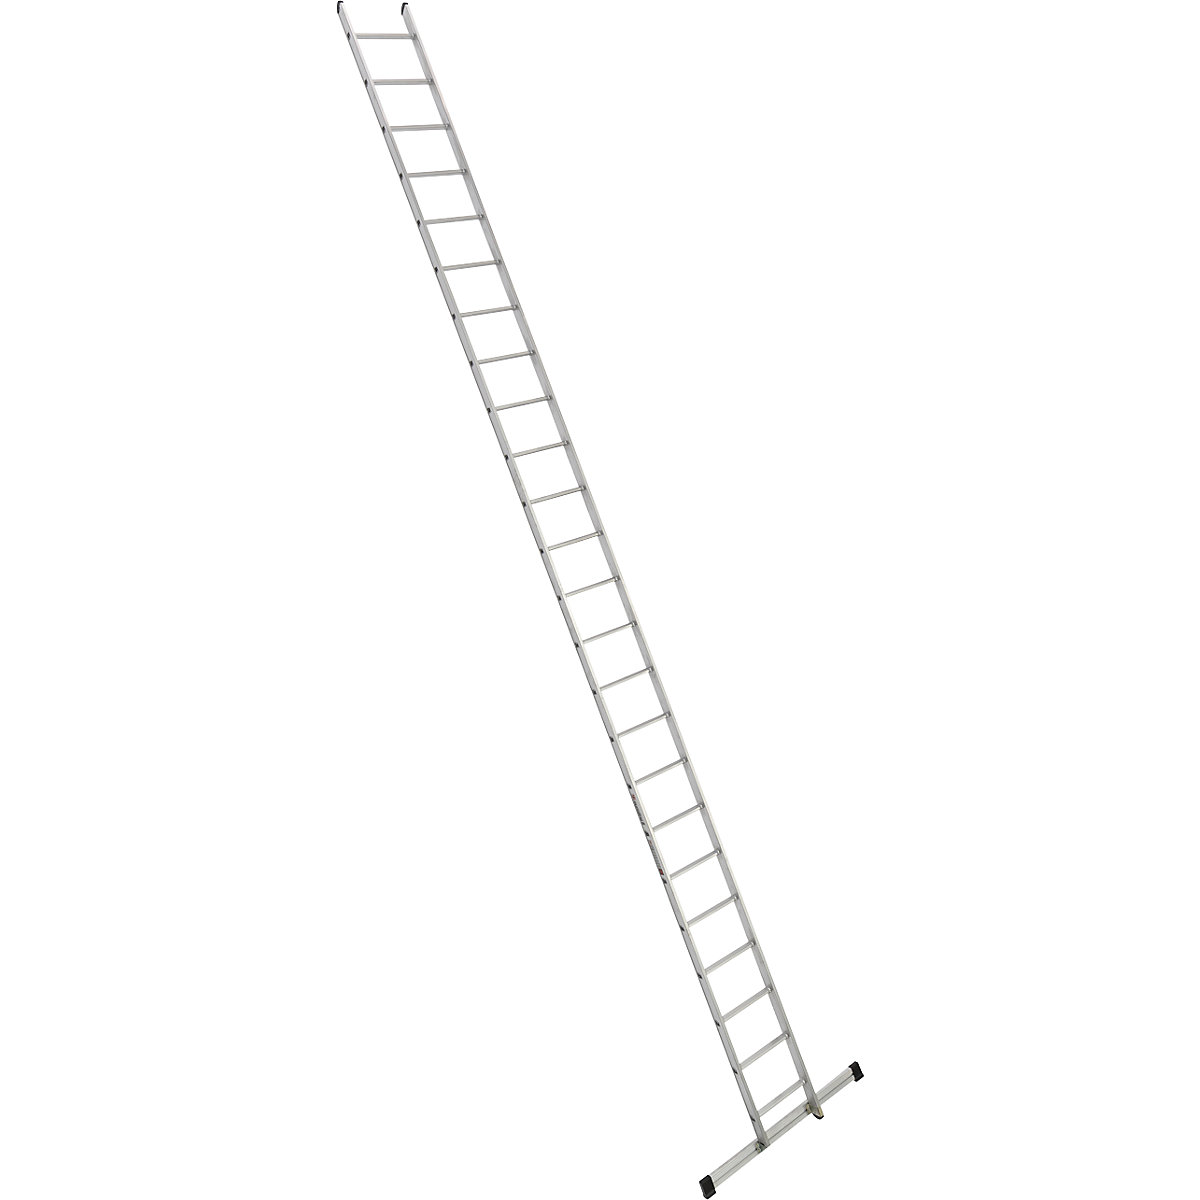 Príložný rebrík s priečkami – euroline, šírka 410 mm, 24 priečok s priečnikom-10